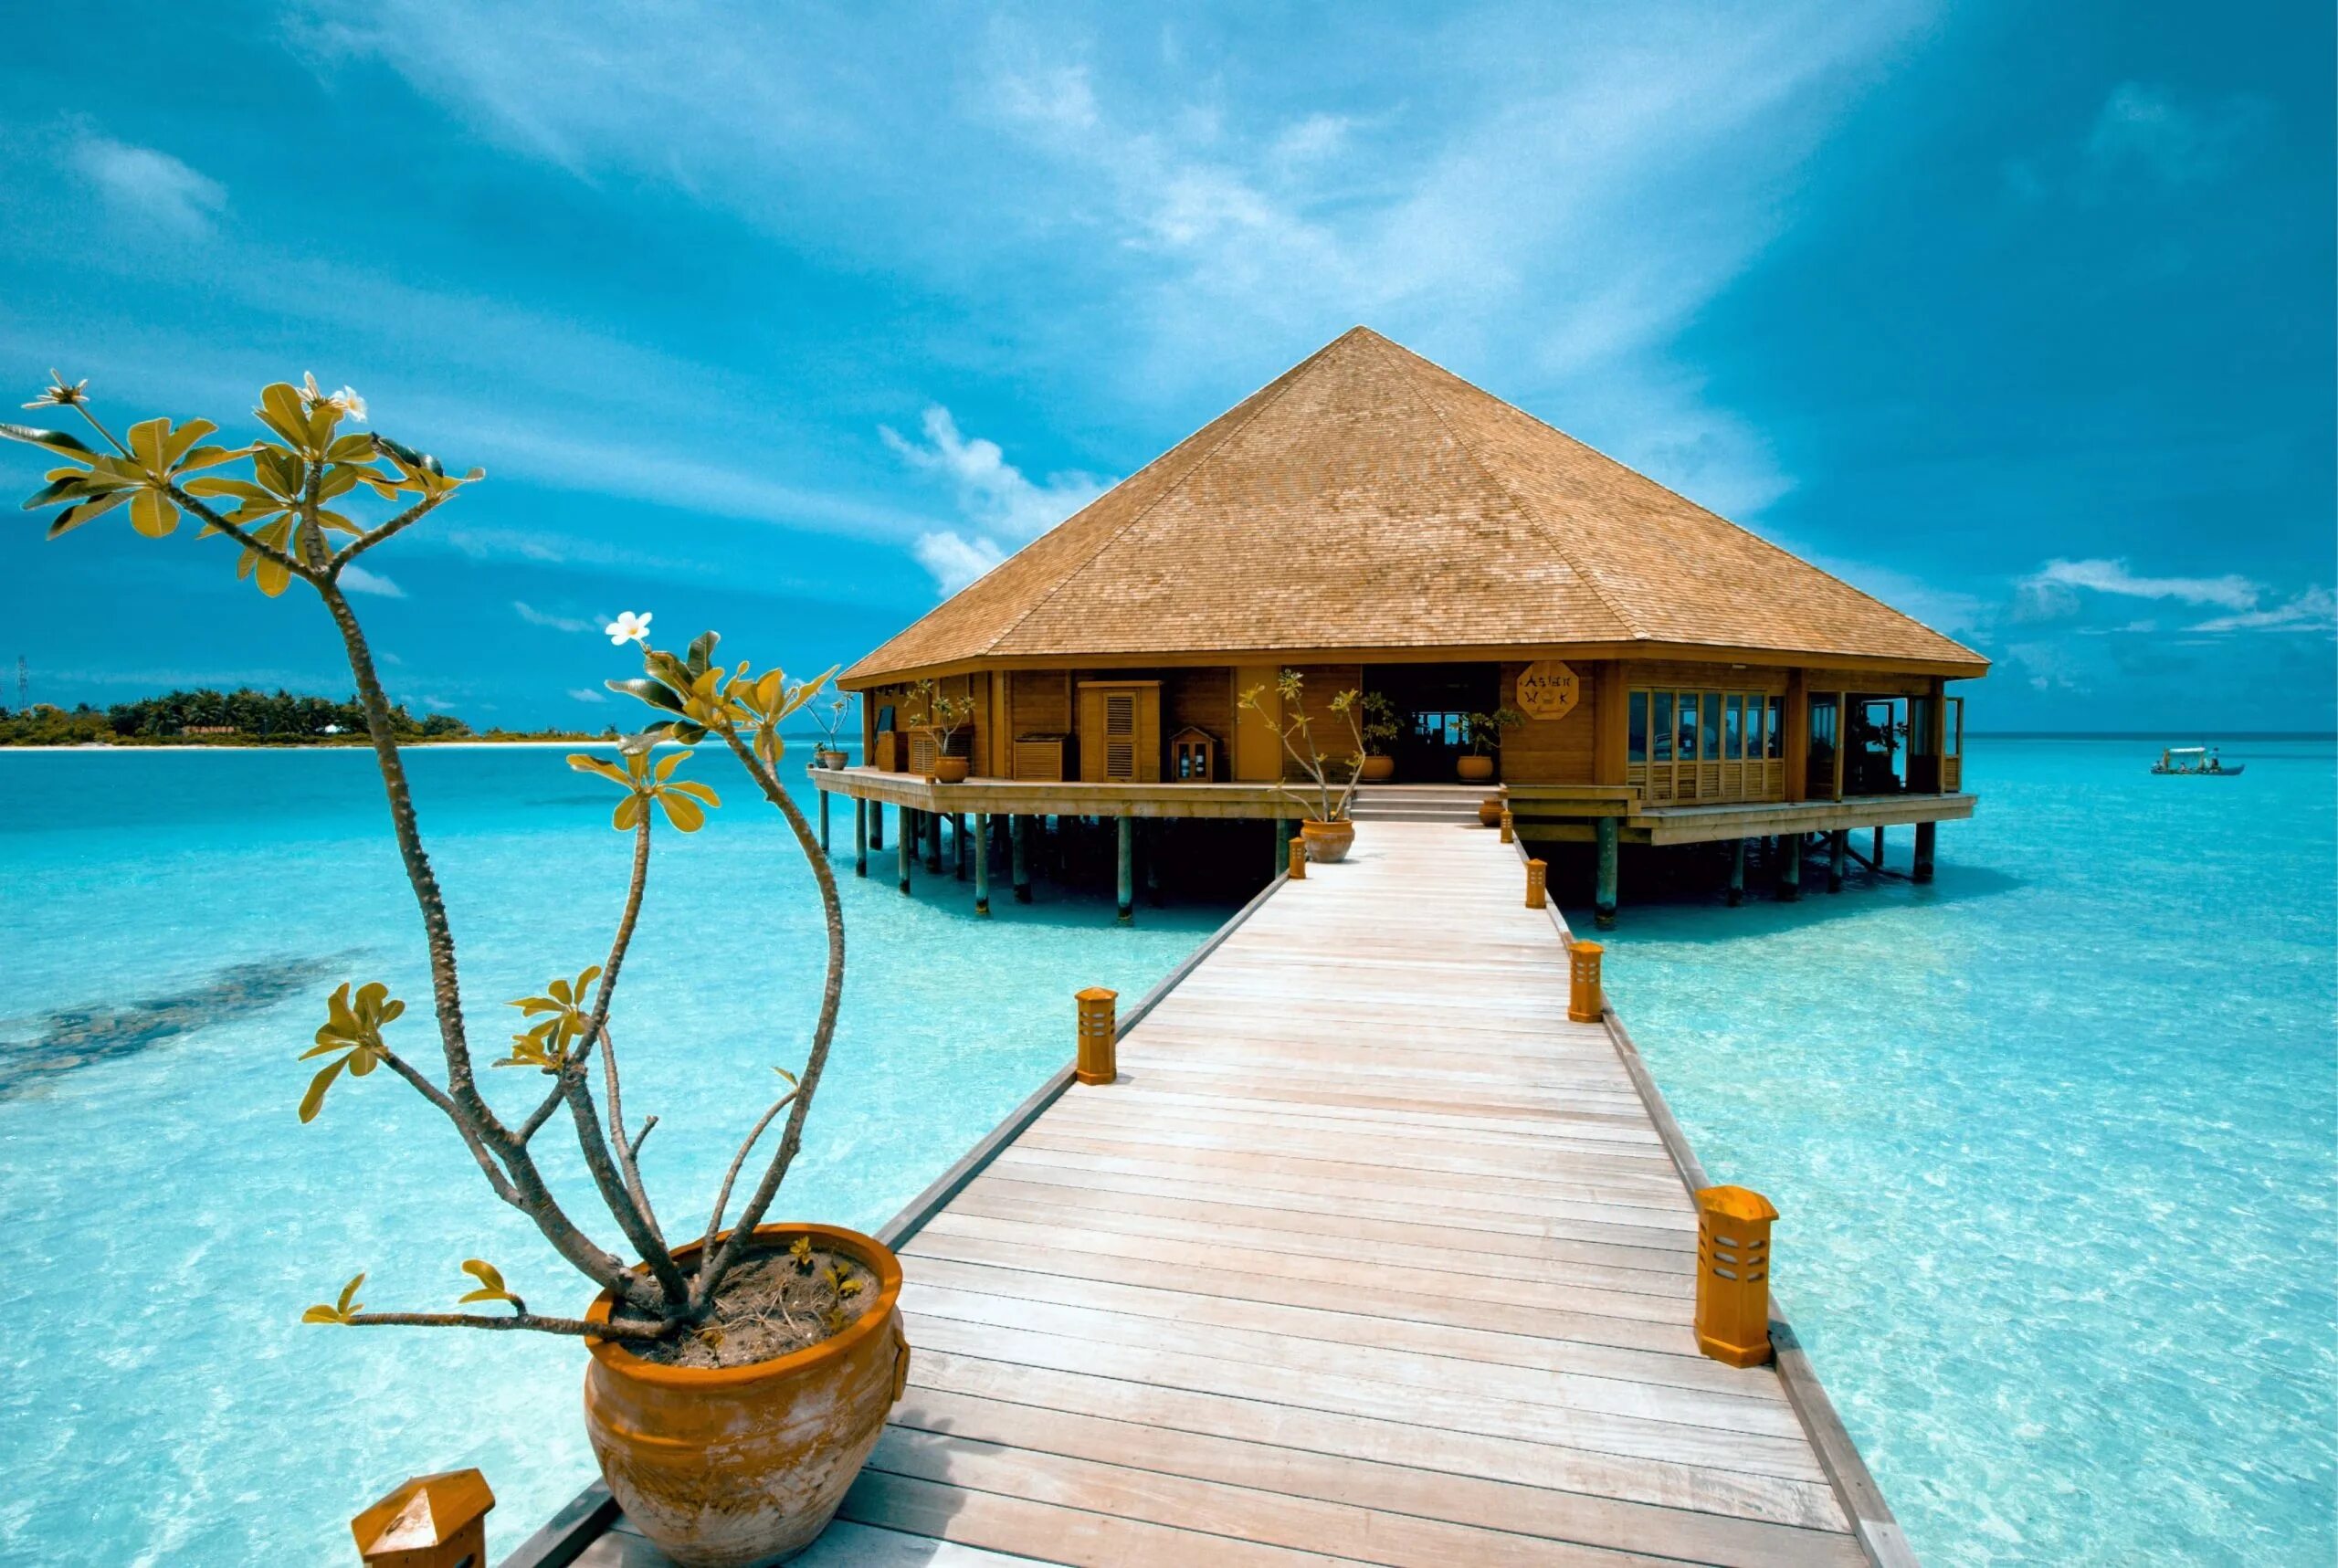 Остров где отдохнуть. Мееру Исланд Резорт Мальдивы. Мальдивы Хитхадху. Бандос Мальдивы. Райские Мальдивские острова.